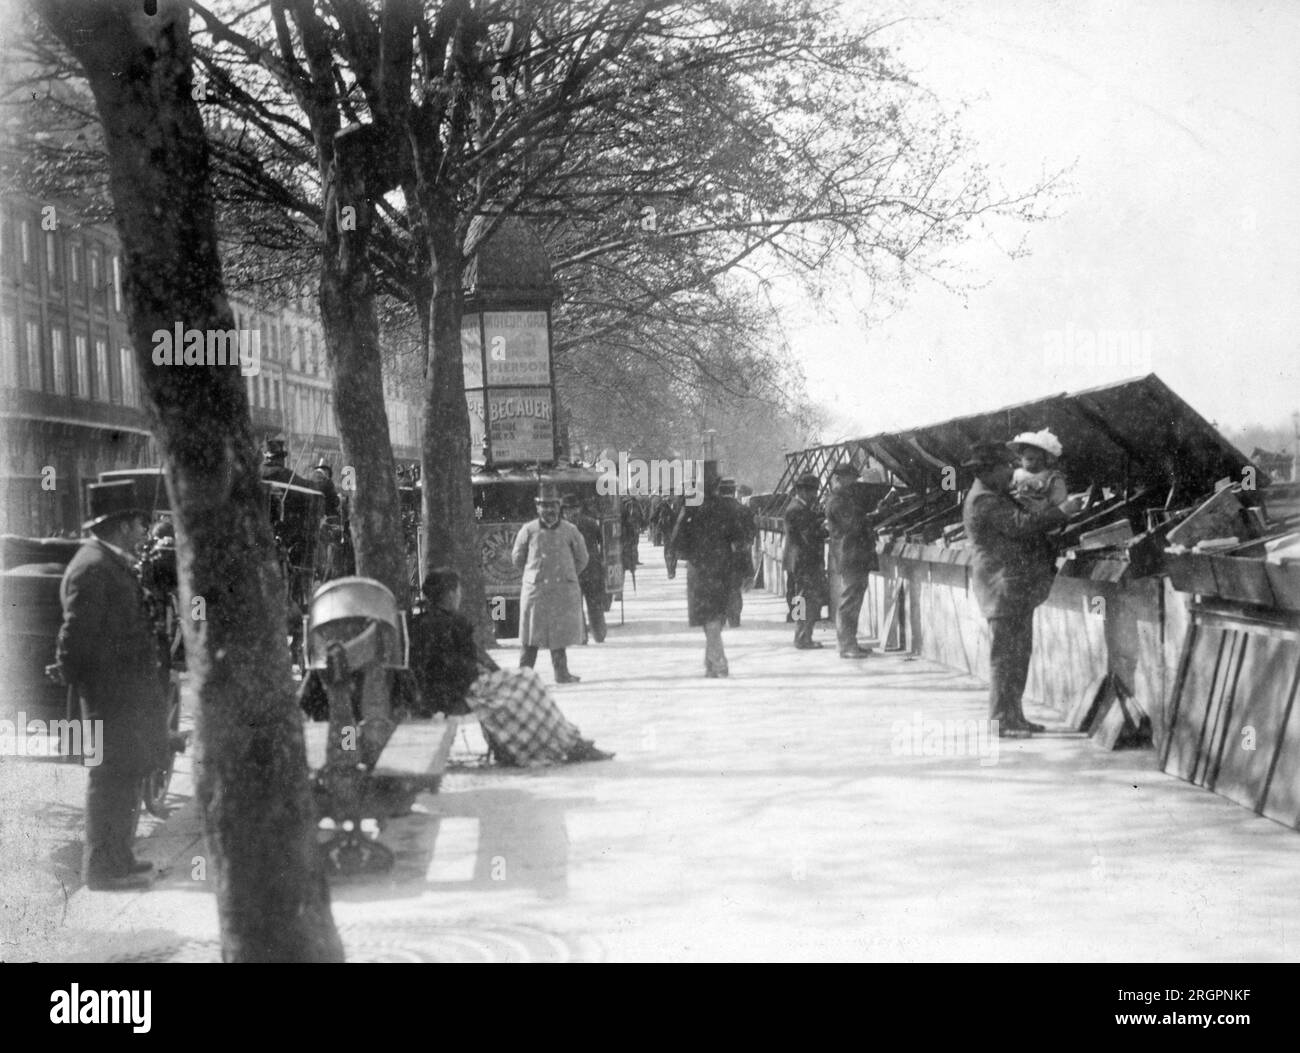 Bouquinistes sur les quais de la Seine a Paris. - Bouquinistes, quai Voltaire, Paris. 1898. Photo Eugène Atget Banque D'Images